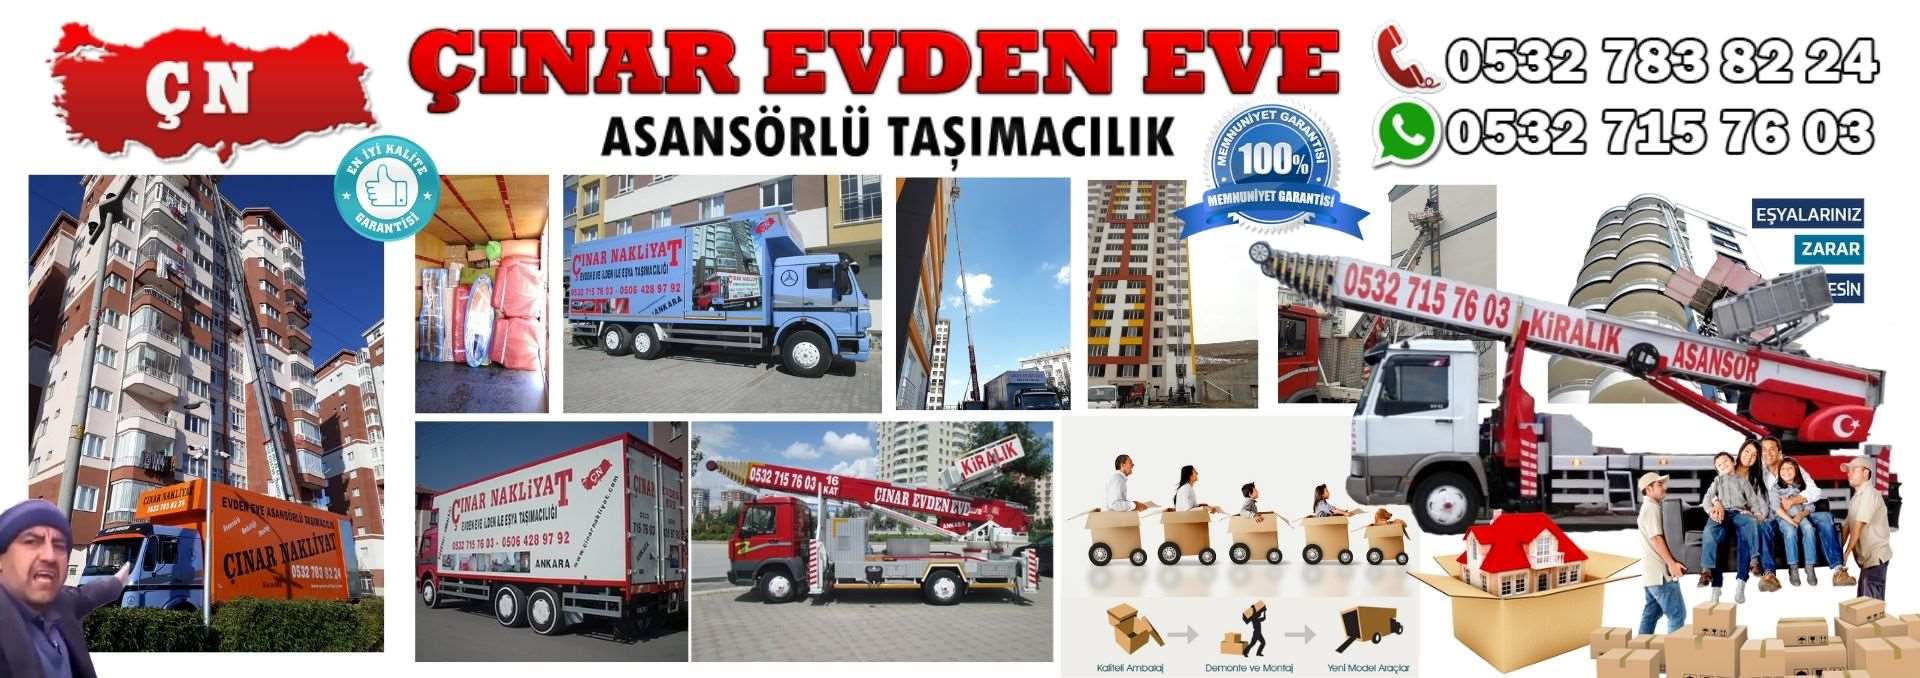 Ankara Altındağ Evden Eve Asansörlü Ev Eşyası Taşıma 0532 715 76 03